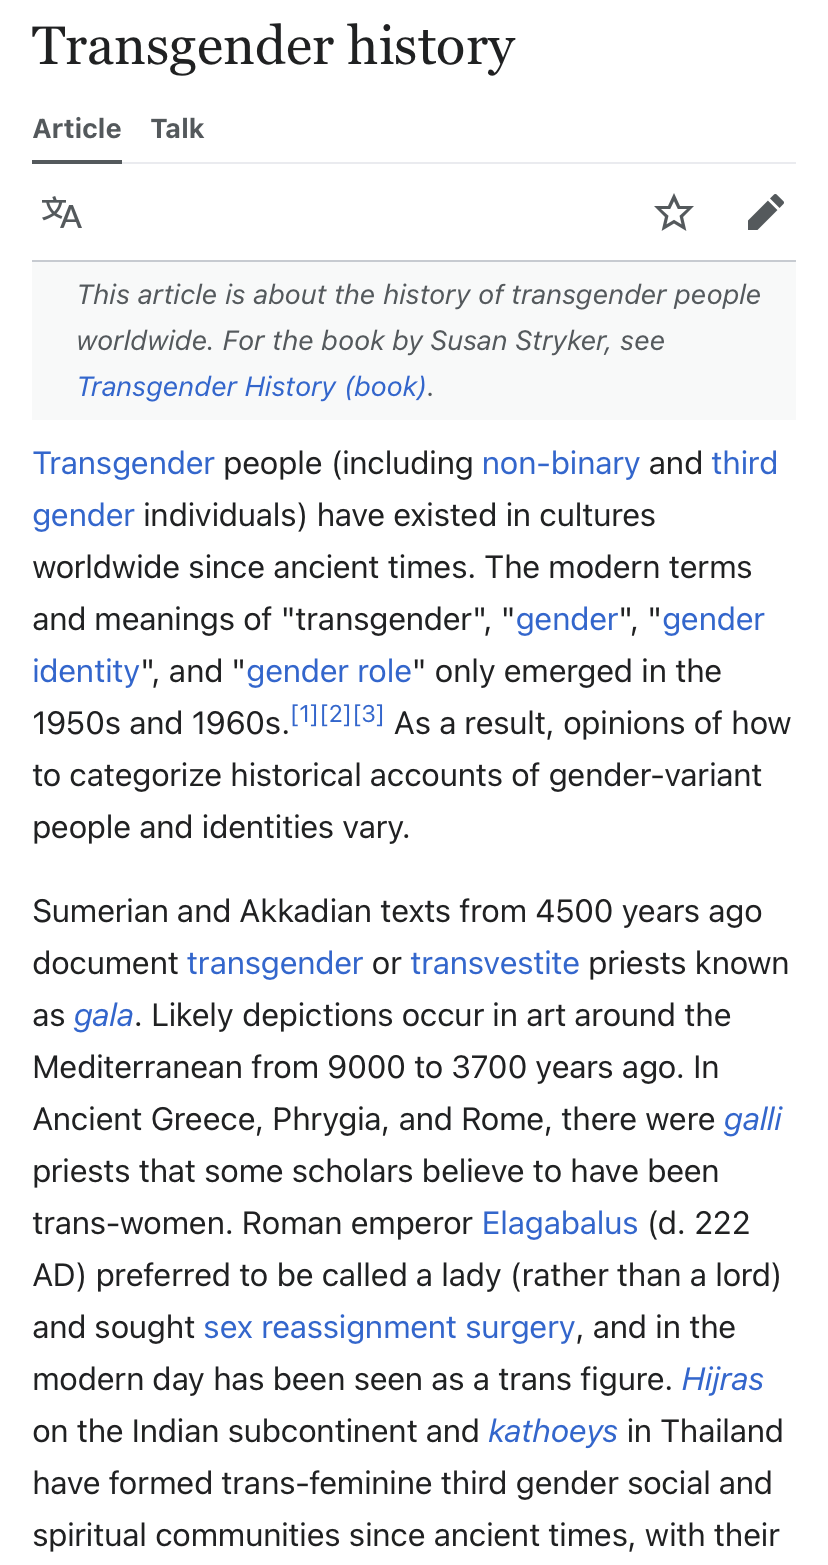 Transgender history Blank Meme Template